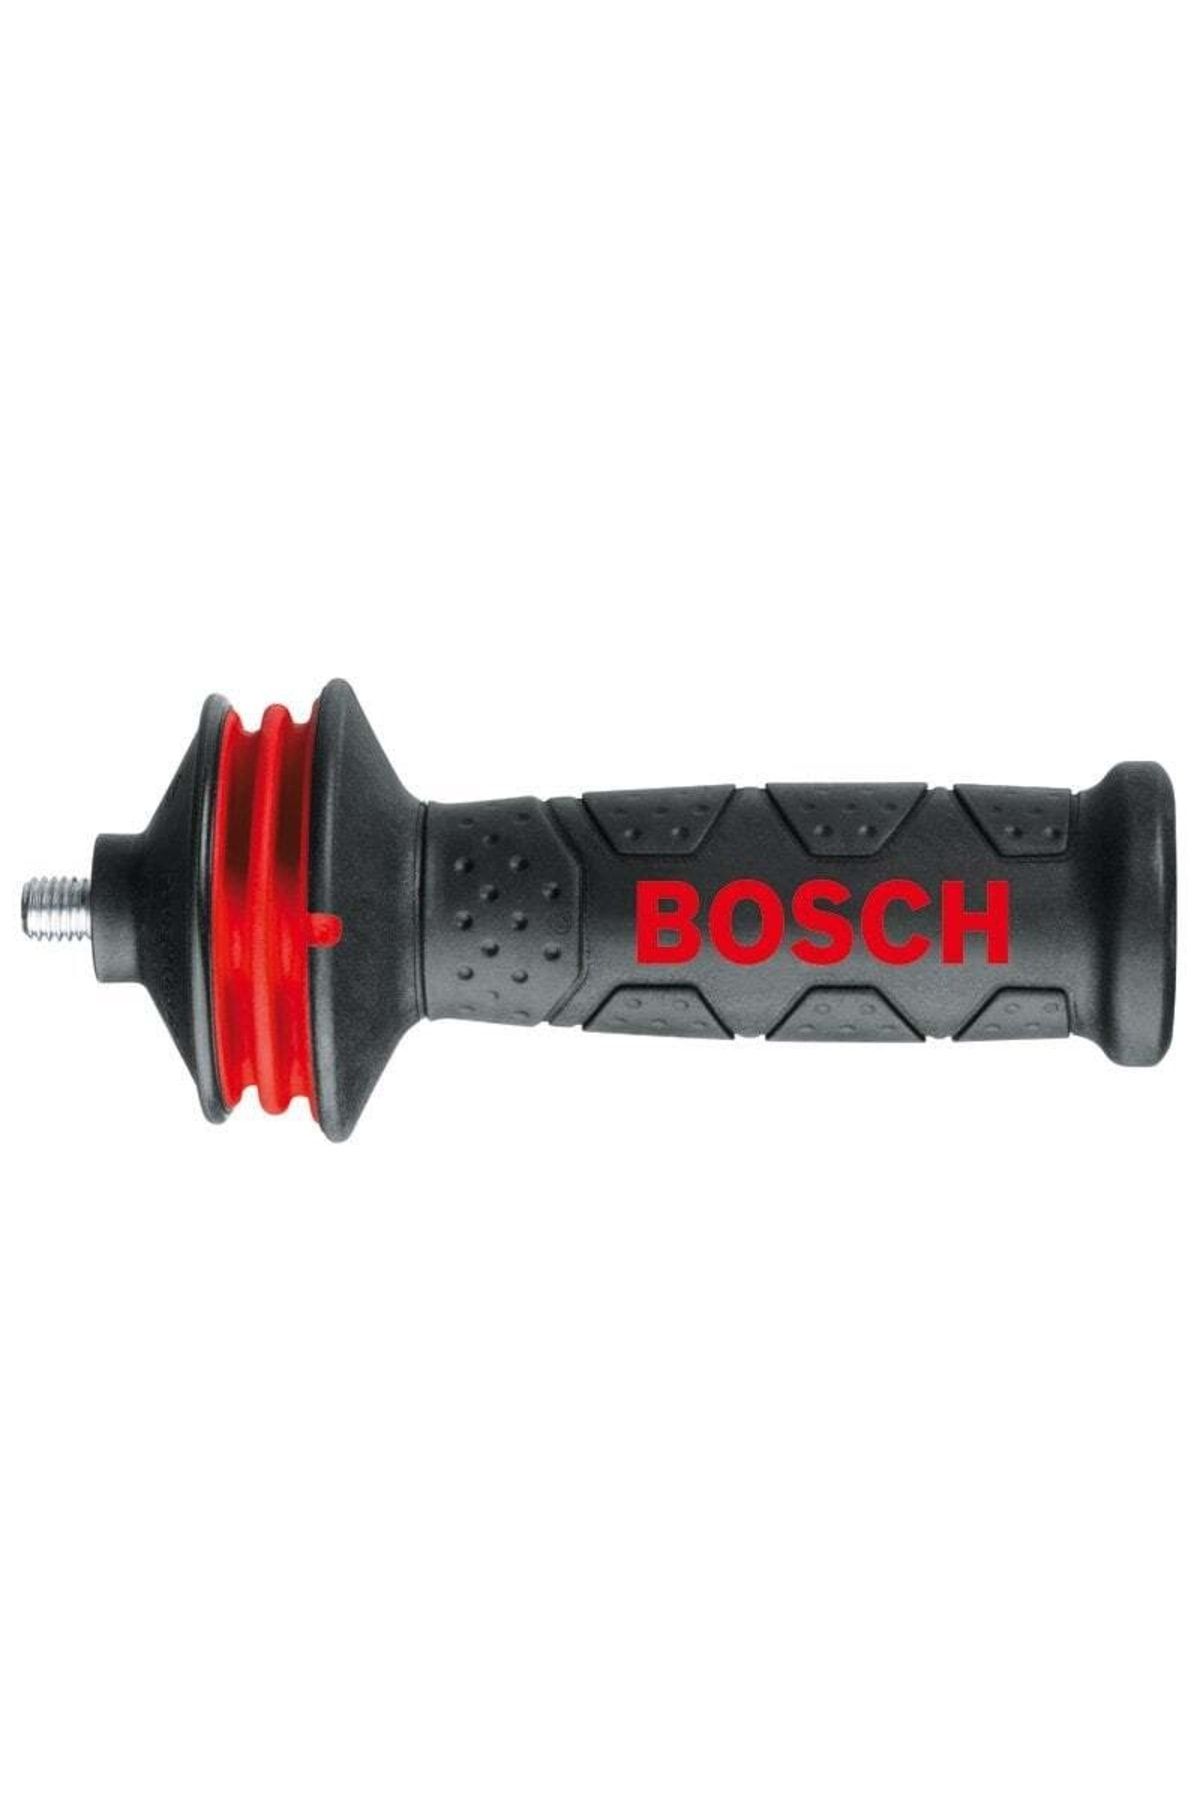 Bosch M10 Avuç Taşlama Için Titreşim Kontrollü Yedek Tutamak